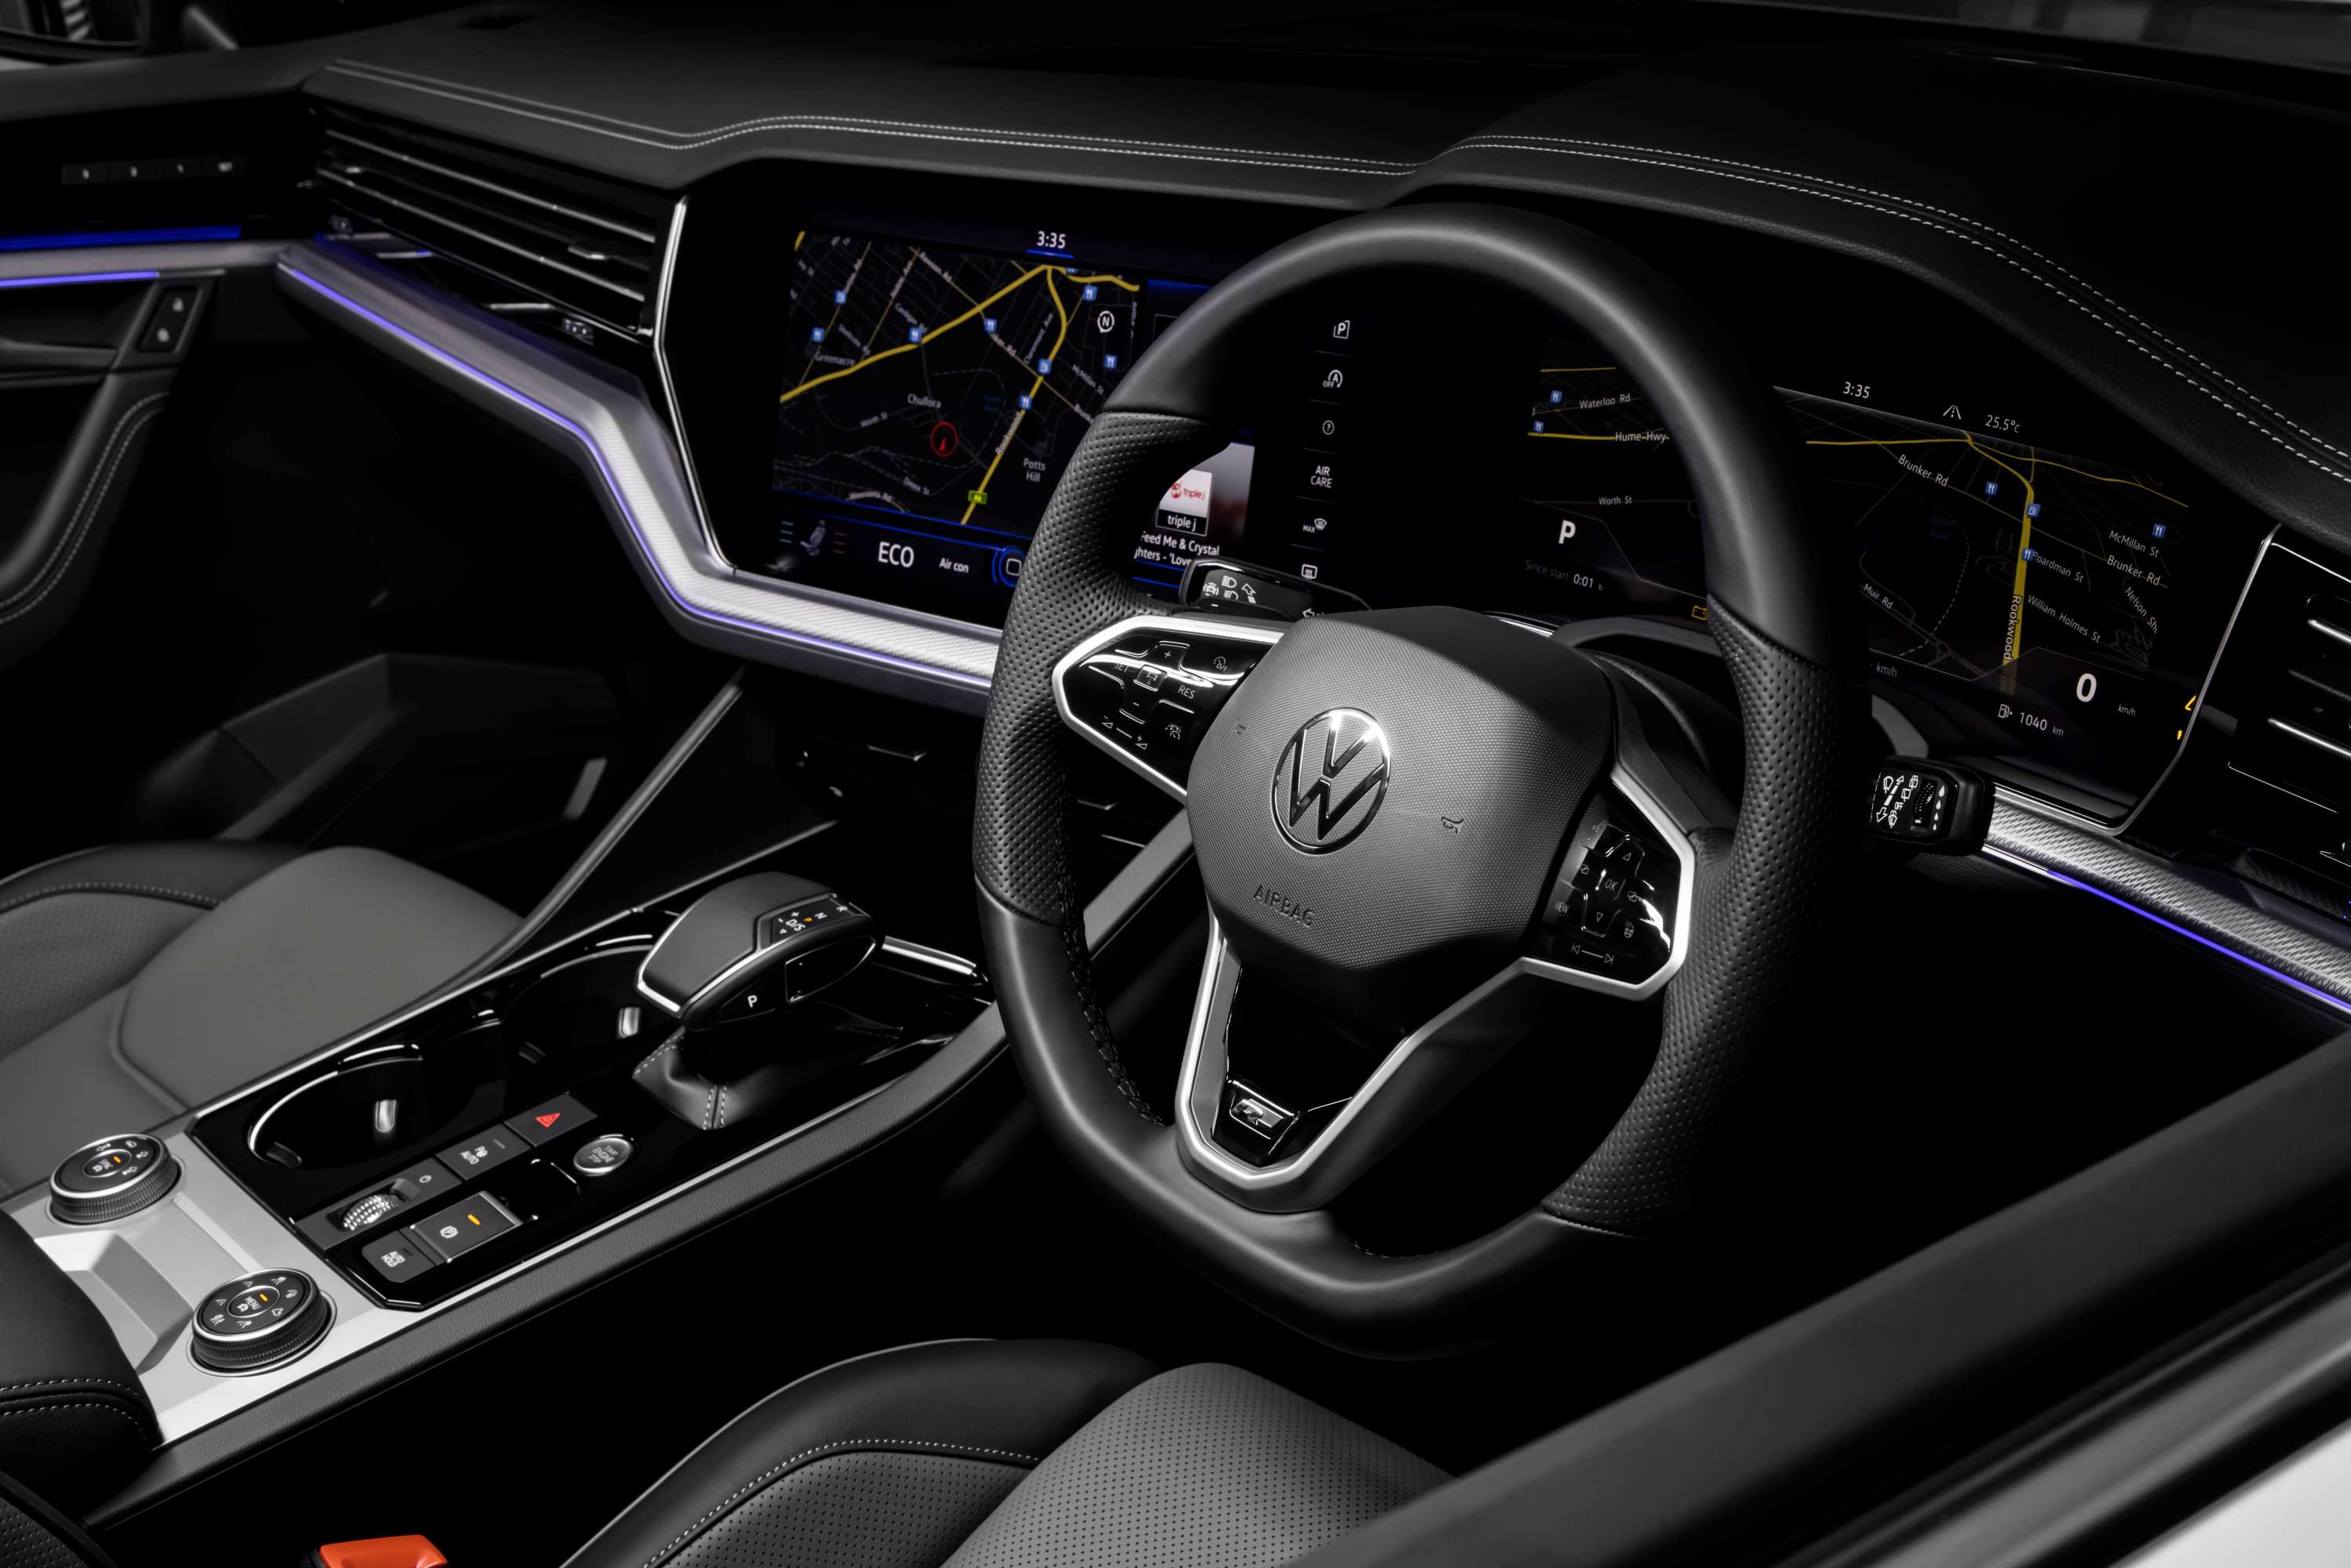 2021 Volkswagen Touareg V8 TDI R-Line interior